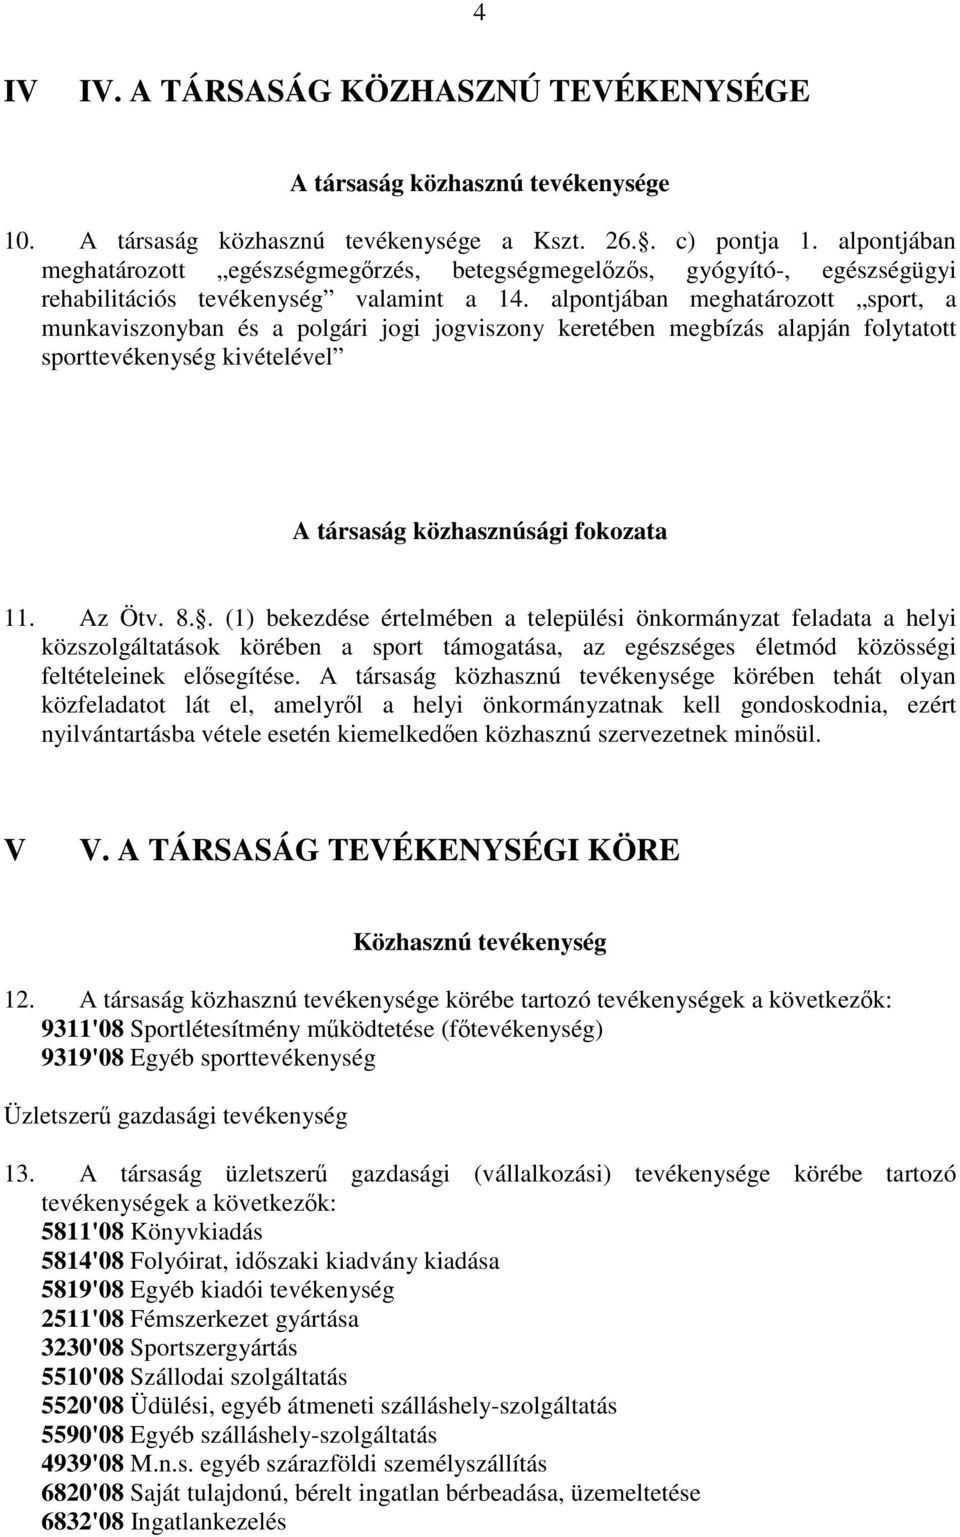 A.-2/2009.(II.16.). sz. határozat-tervezet függeléke ALAPÍTÓ OKIRATOT  MÓDOSÍTÓ OKIRAT - PDF Ingyenes letöltés